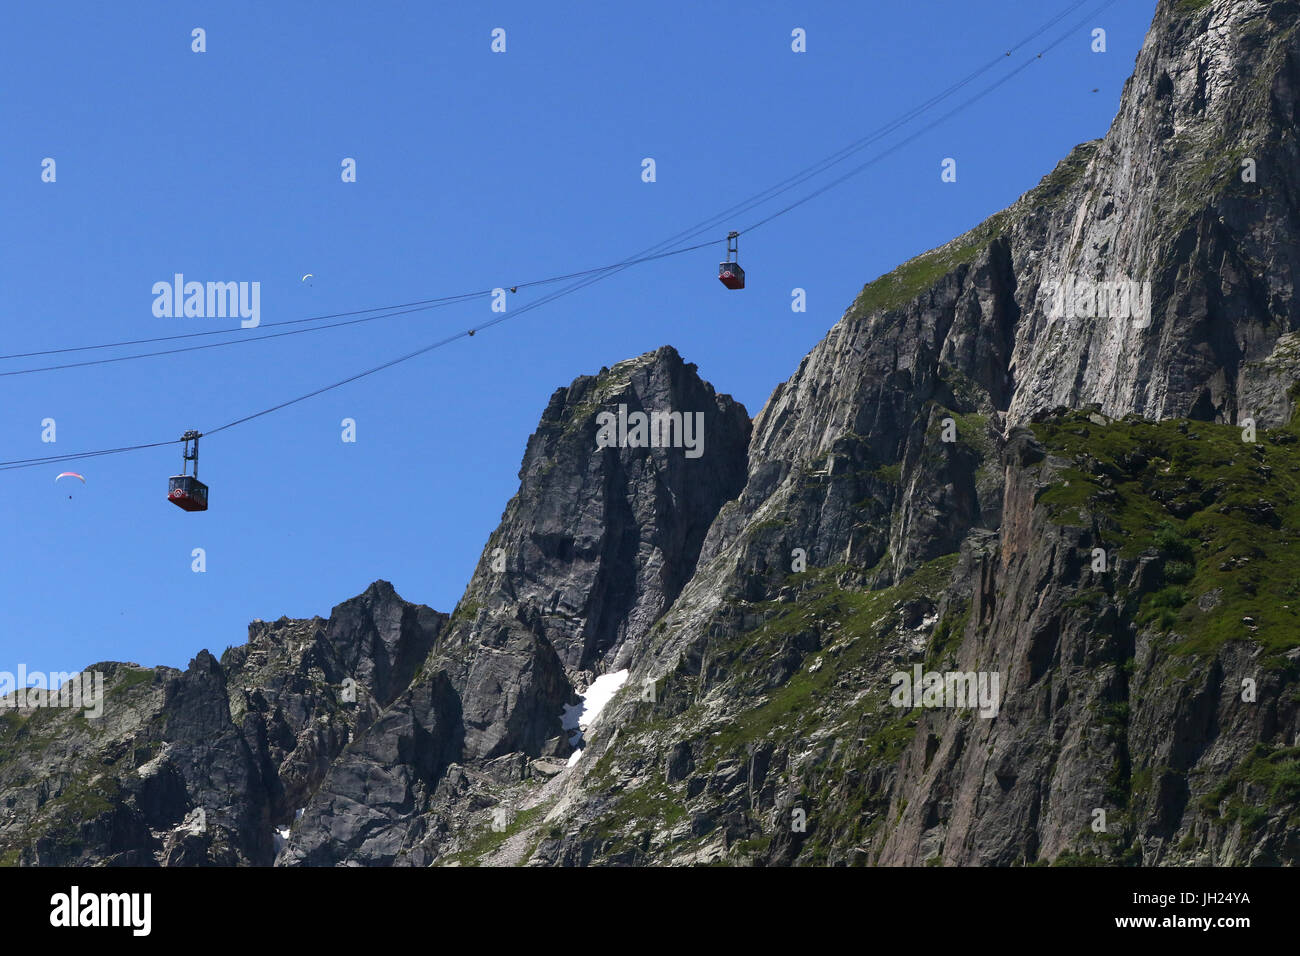 Sulle Alpi francesi. Massiccio del Monte Bianco. Ovovia al Brevent. Chamonix. La Francia. Foto Stock